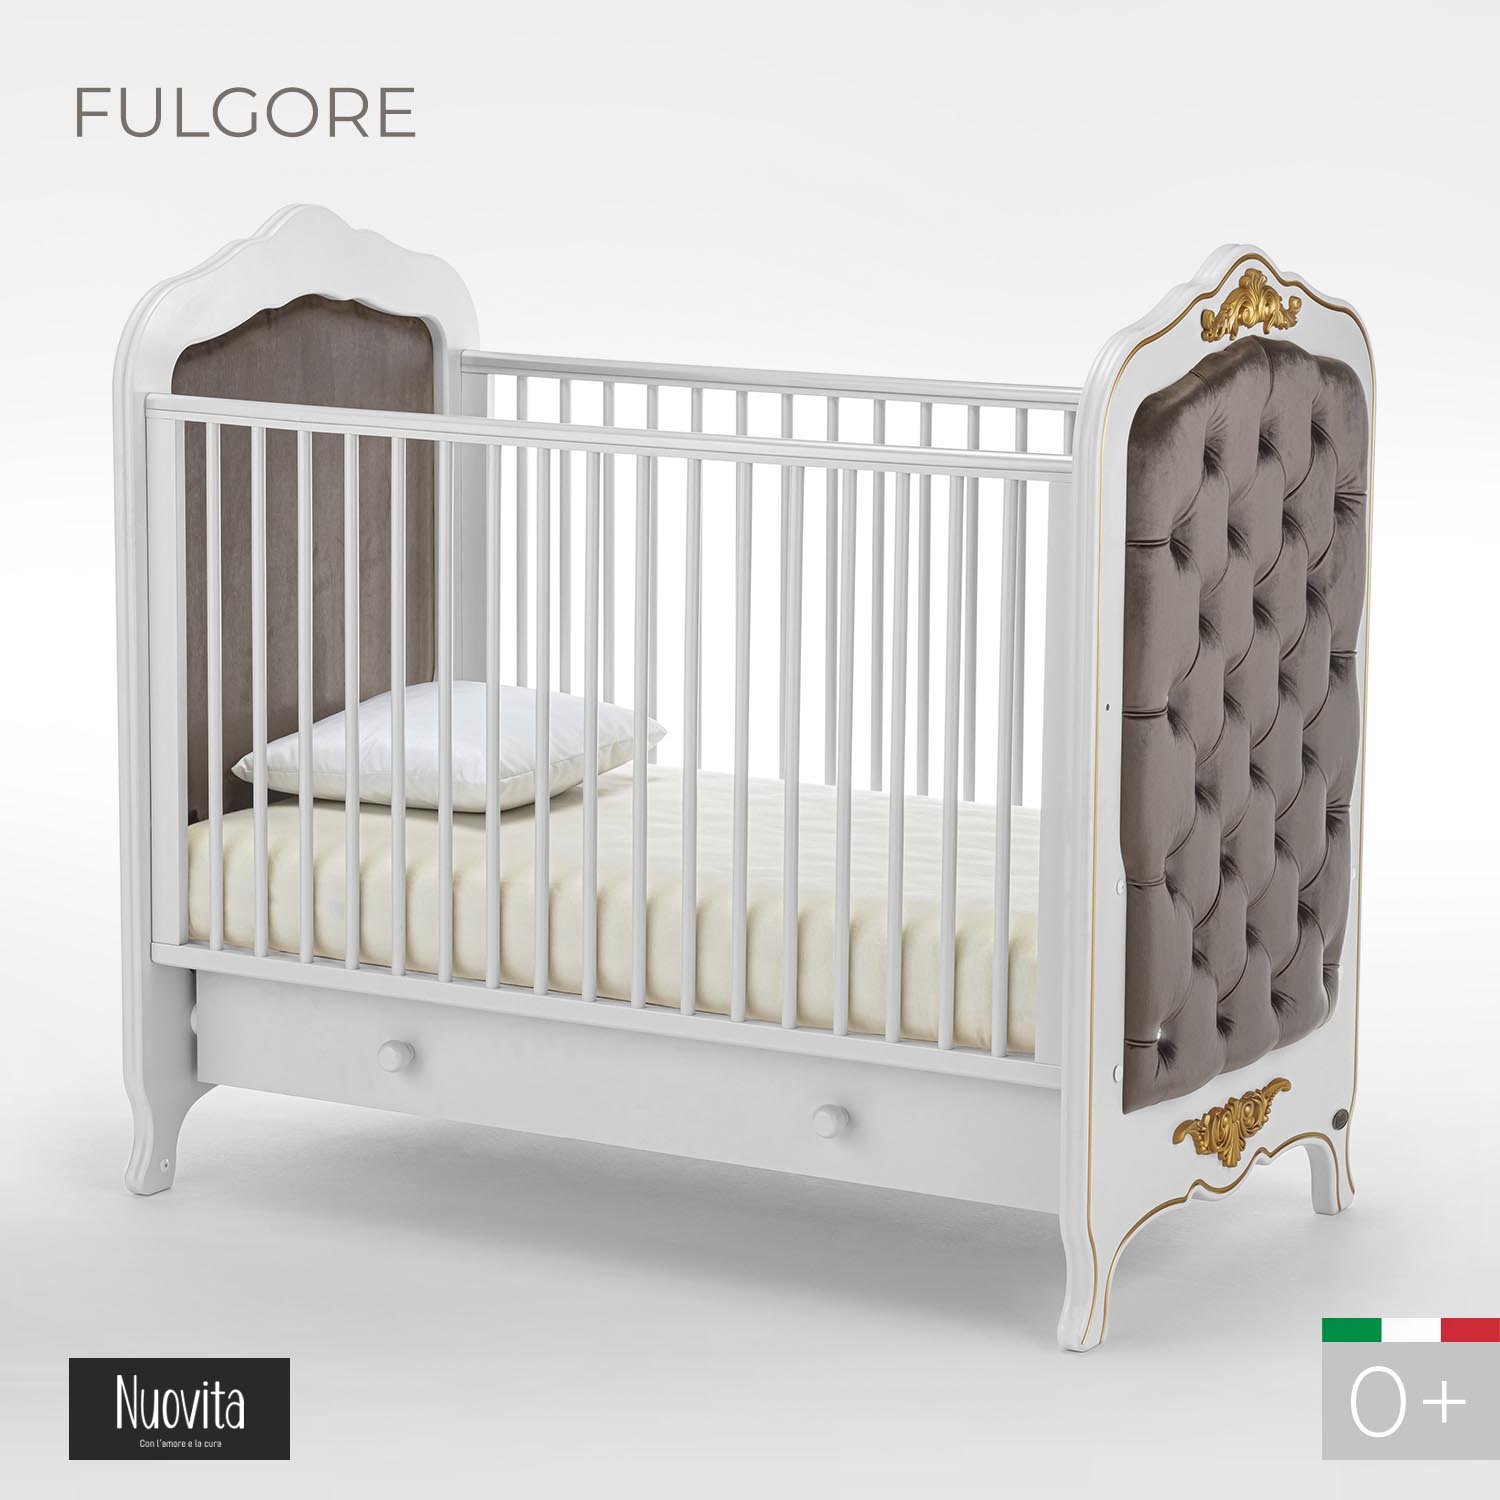 Детская кровать Nuovita Fulgore, белый шерстяная шапка с градиентным узором regina детская